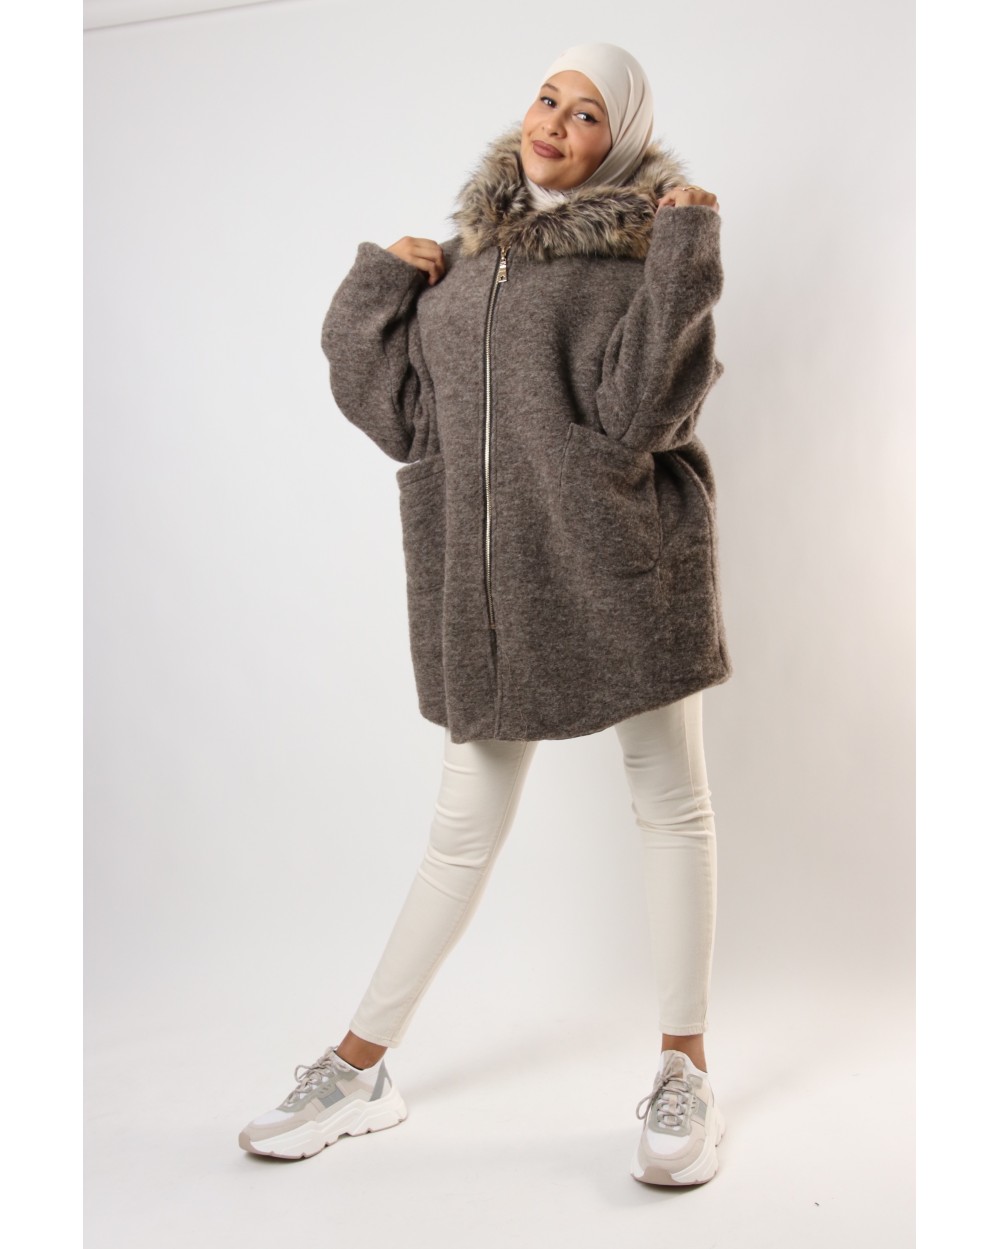 Souheila coat with hooded zip